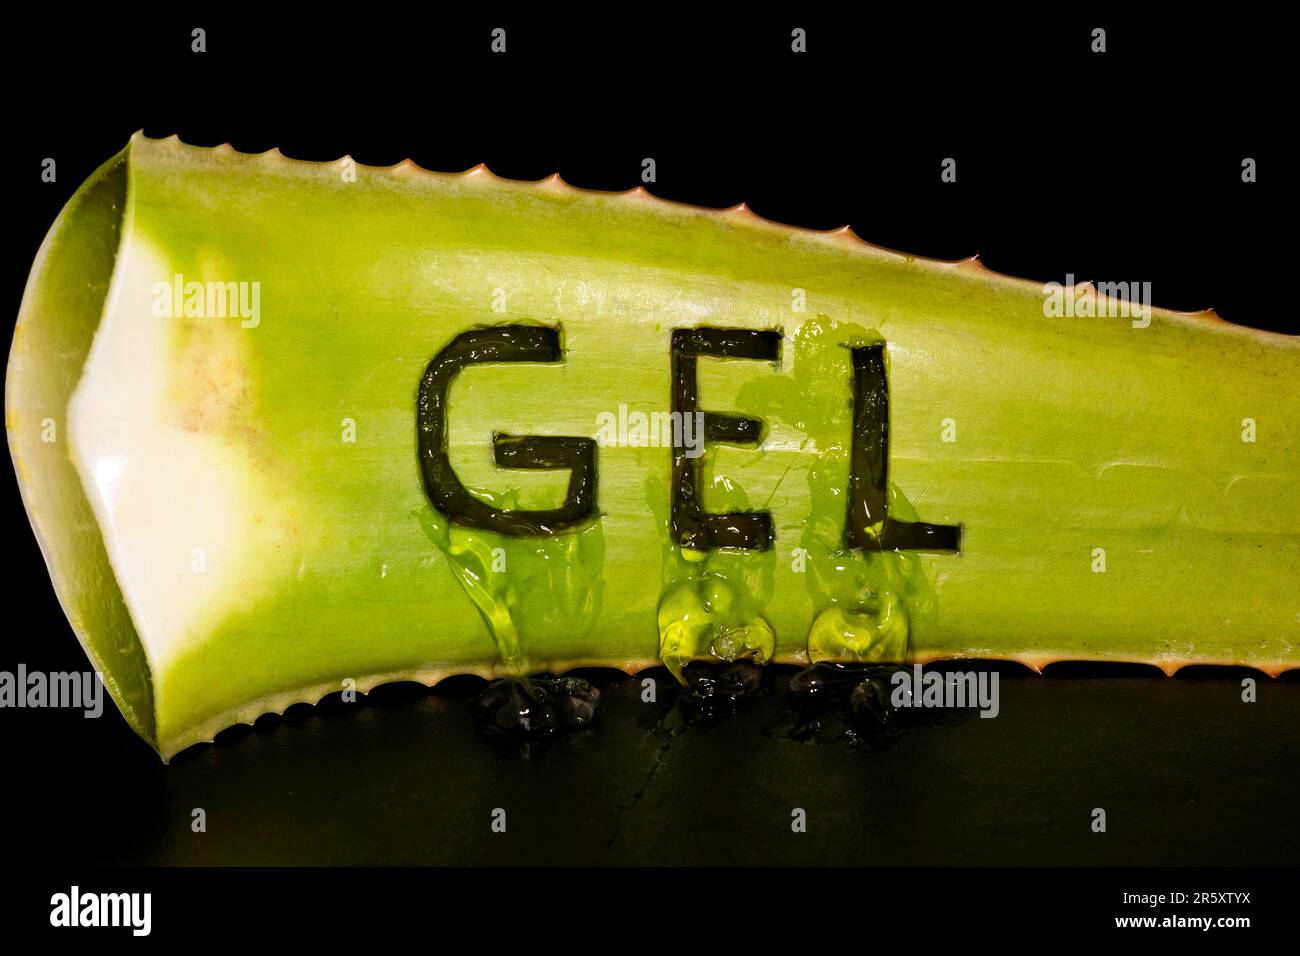 Das Wort GEL wurde in echte Aloe Veras (Aloe Vera) gehauen und das Gel ist leer, Studioaufnahme mit schwarzem Hintergrund Stockfoto